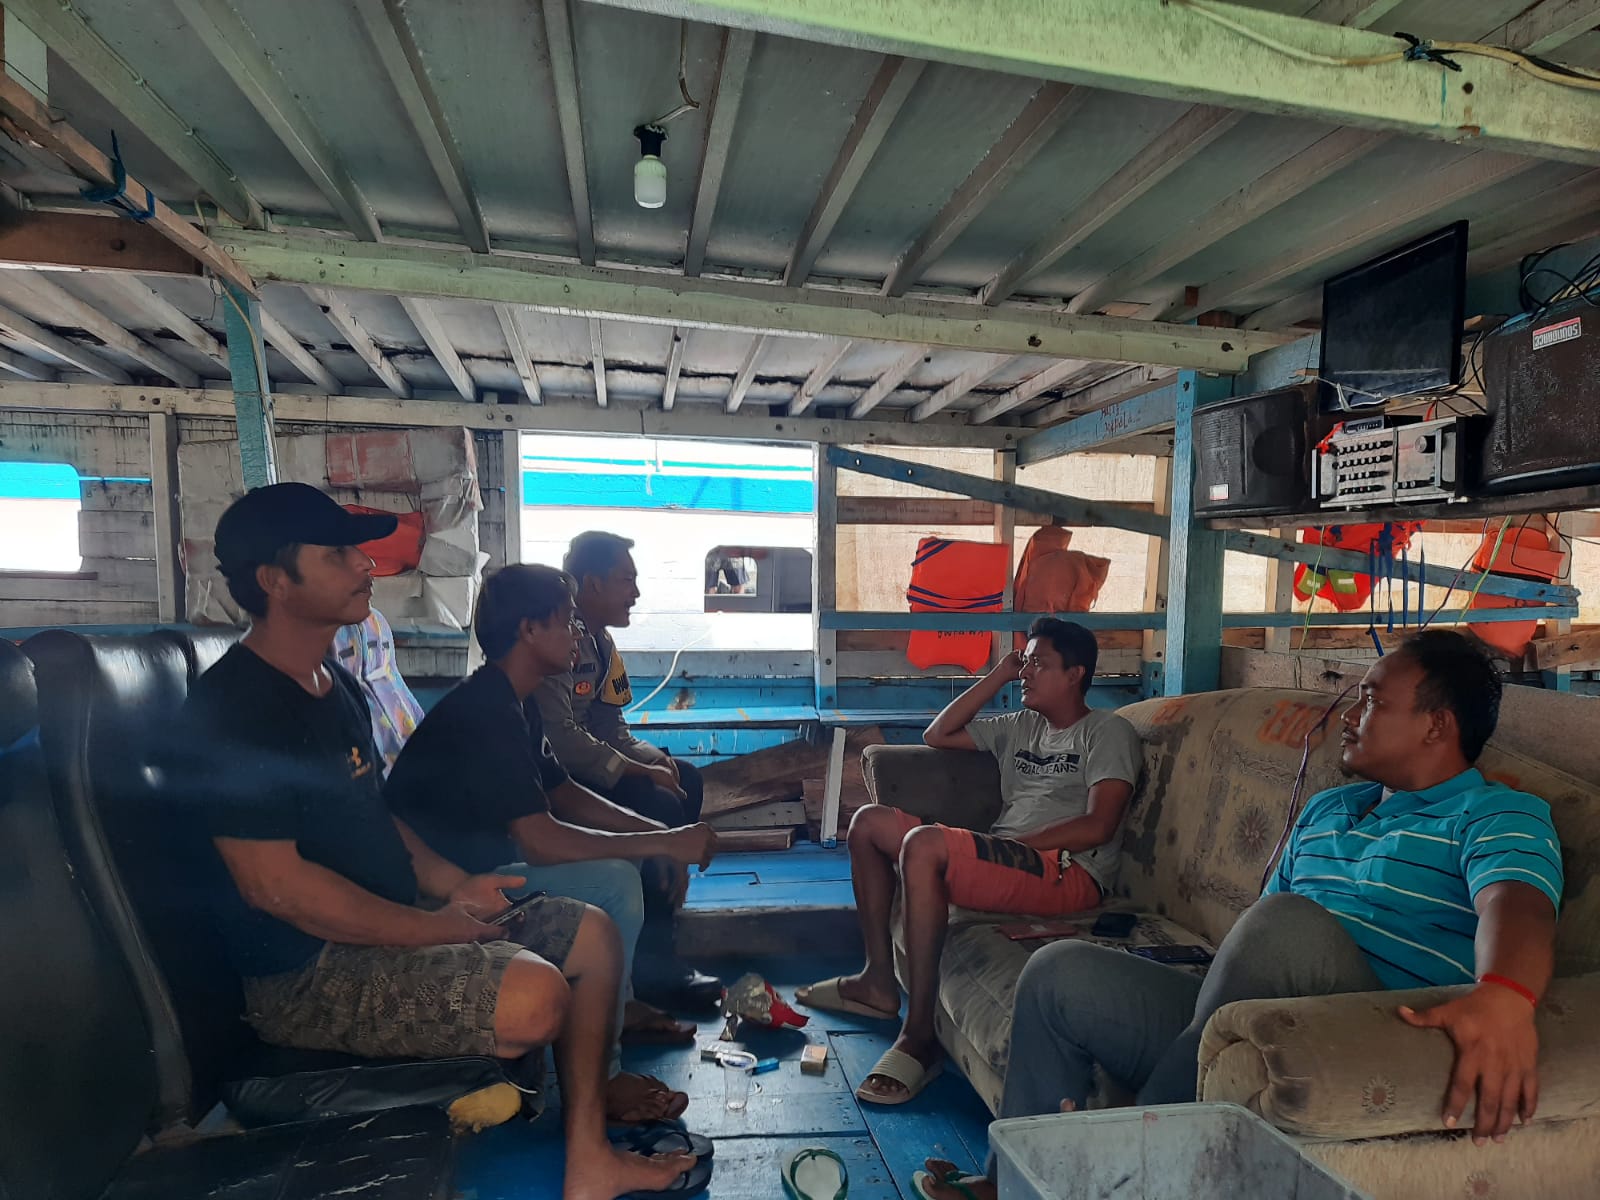 Bhabinkamtibmas Pulau Tidung Berikan Himbauan kepada Pemilik Kapal Ojek untuk Utamakan Keselamatan Penumpang